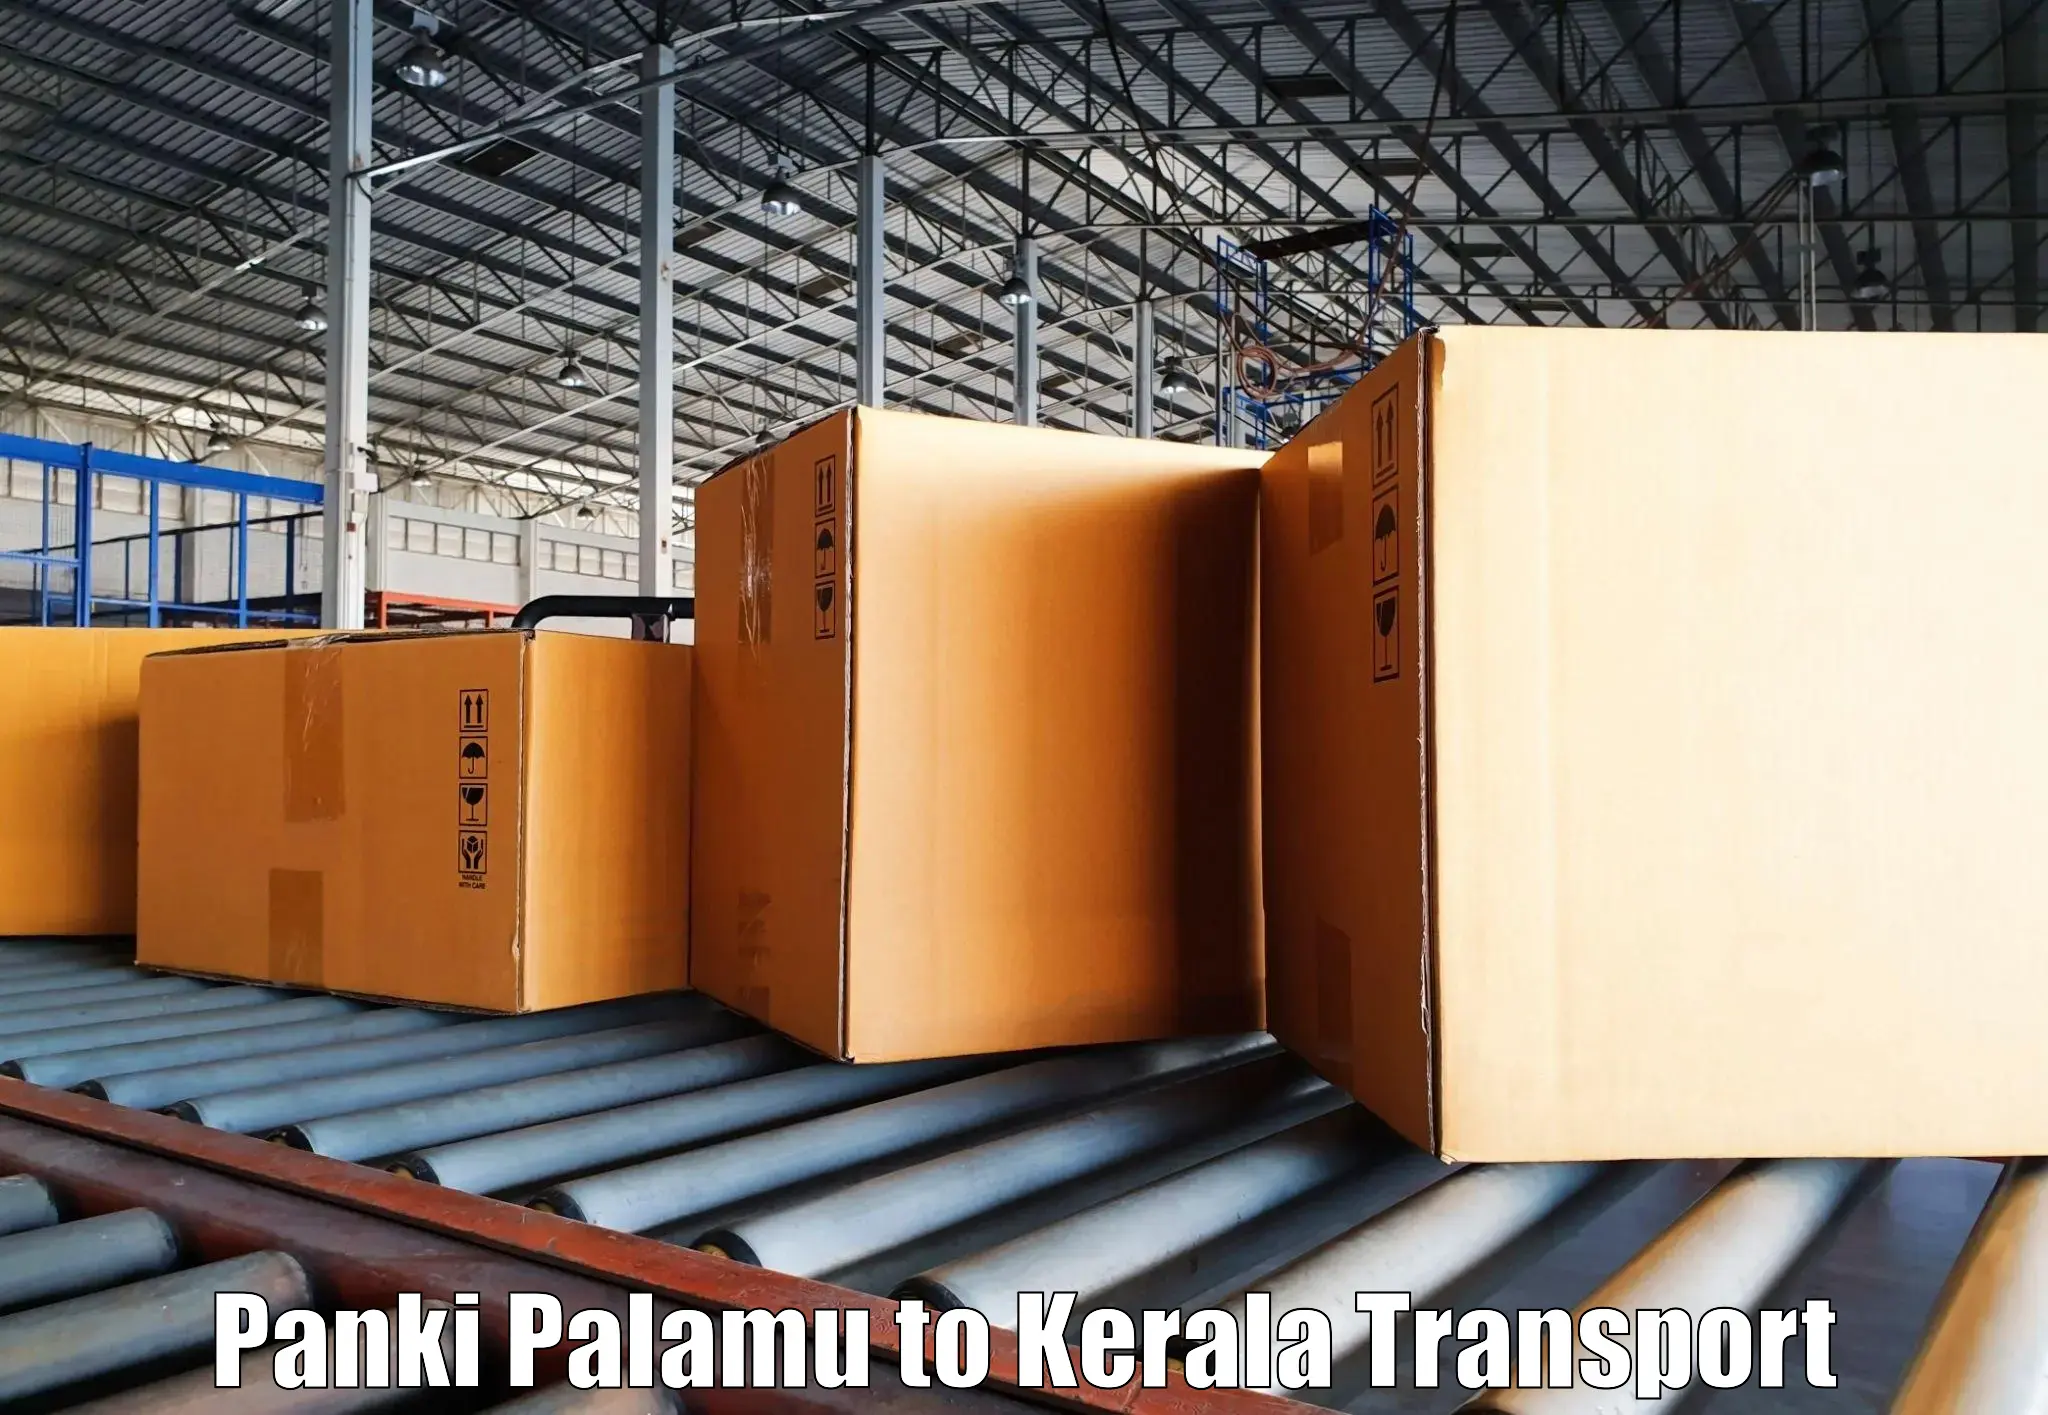 Container transport service Panki Palamu to Kalanjoor